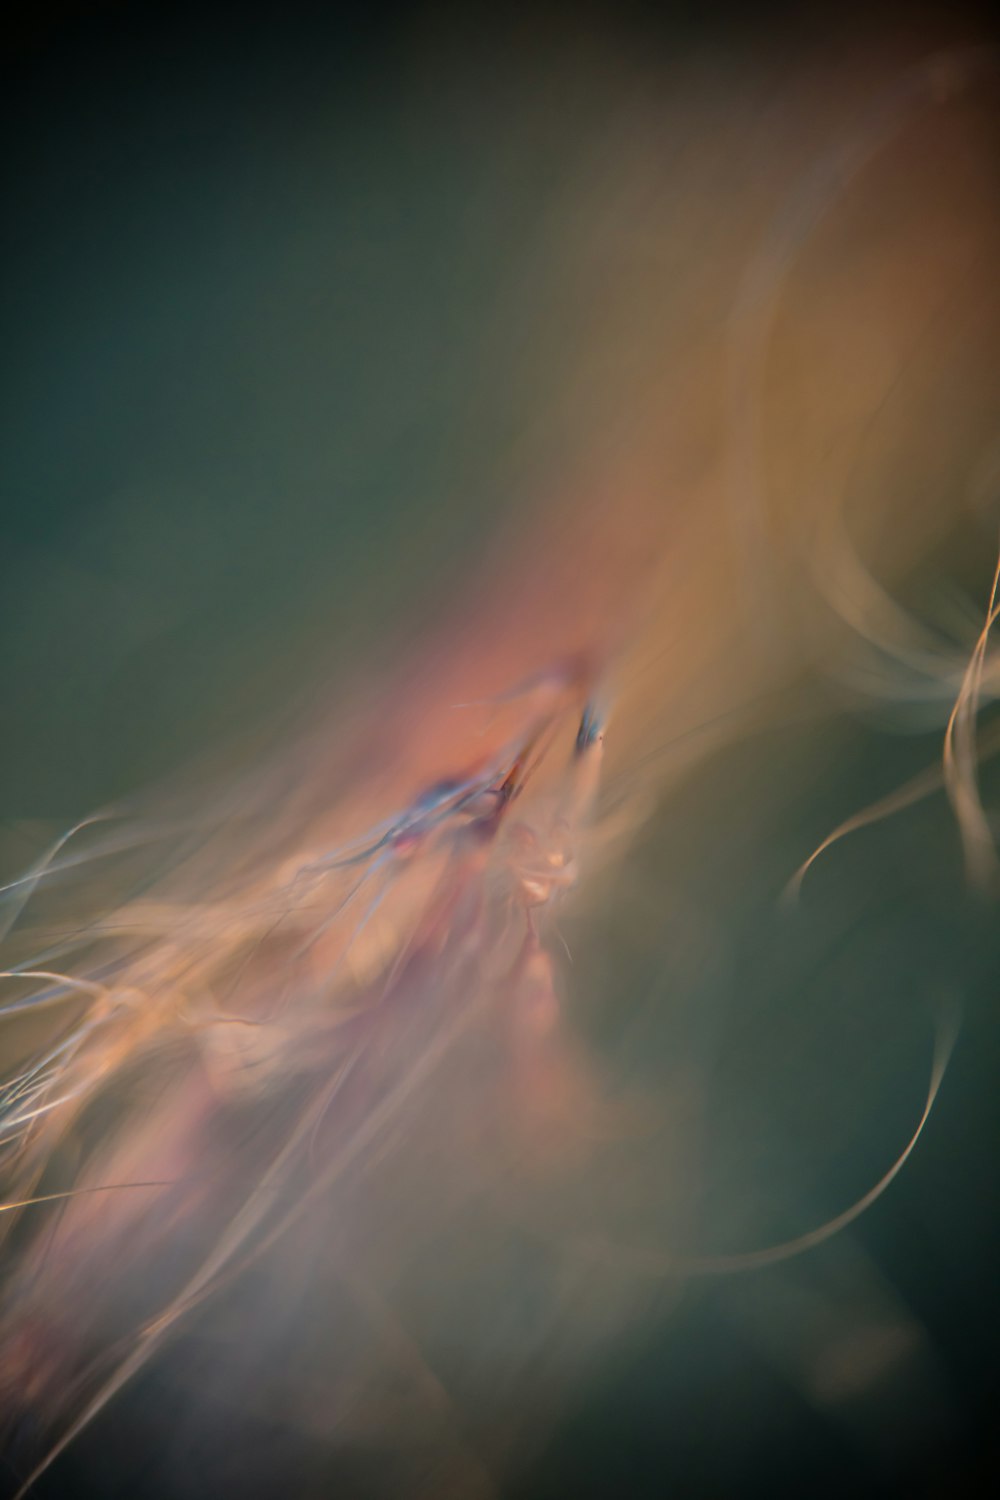 Una foto borrosa de una medusa en el agua